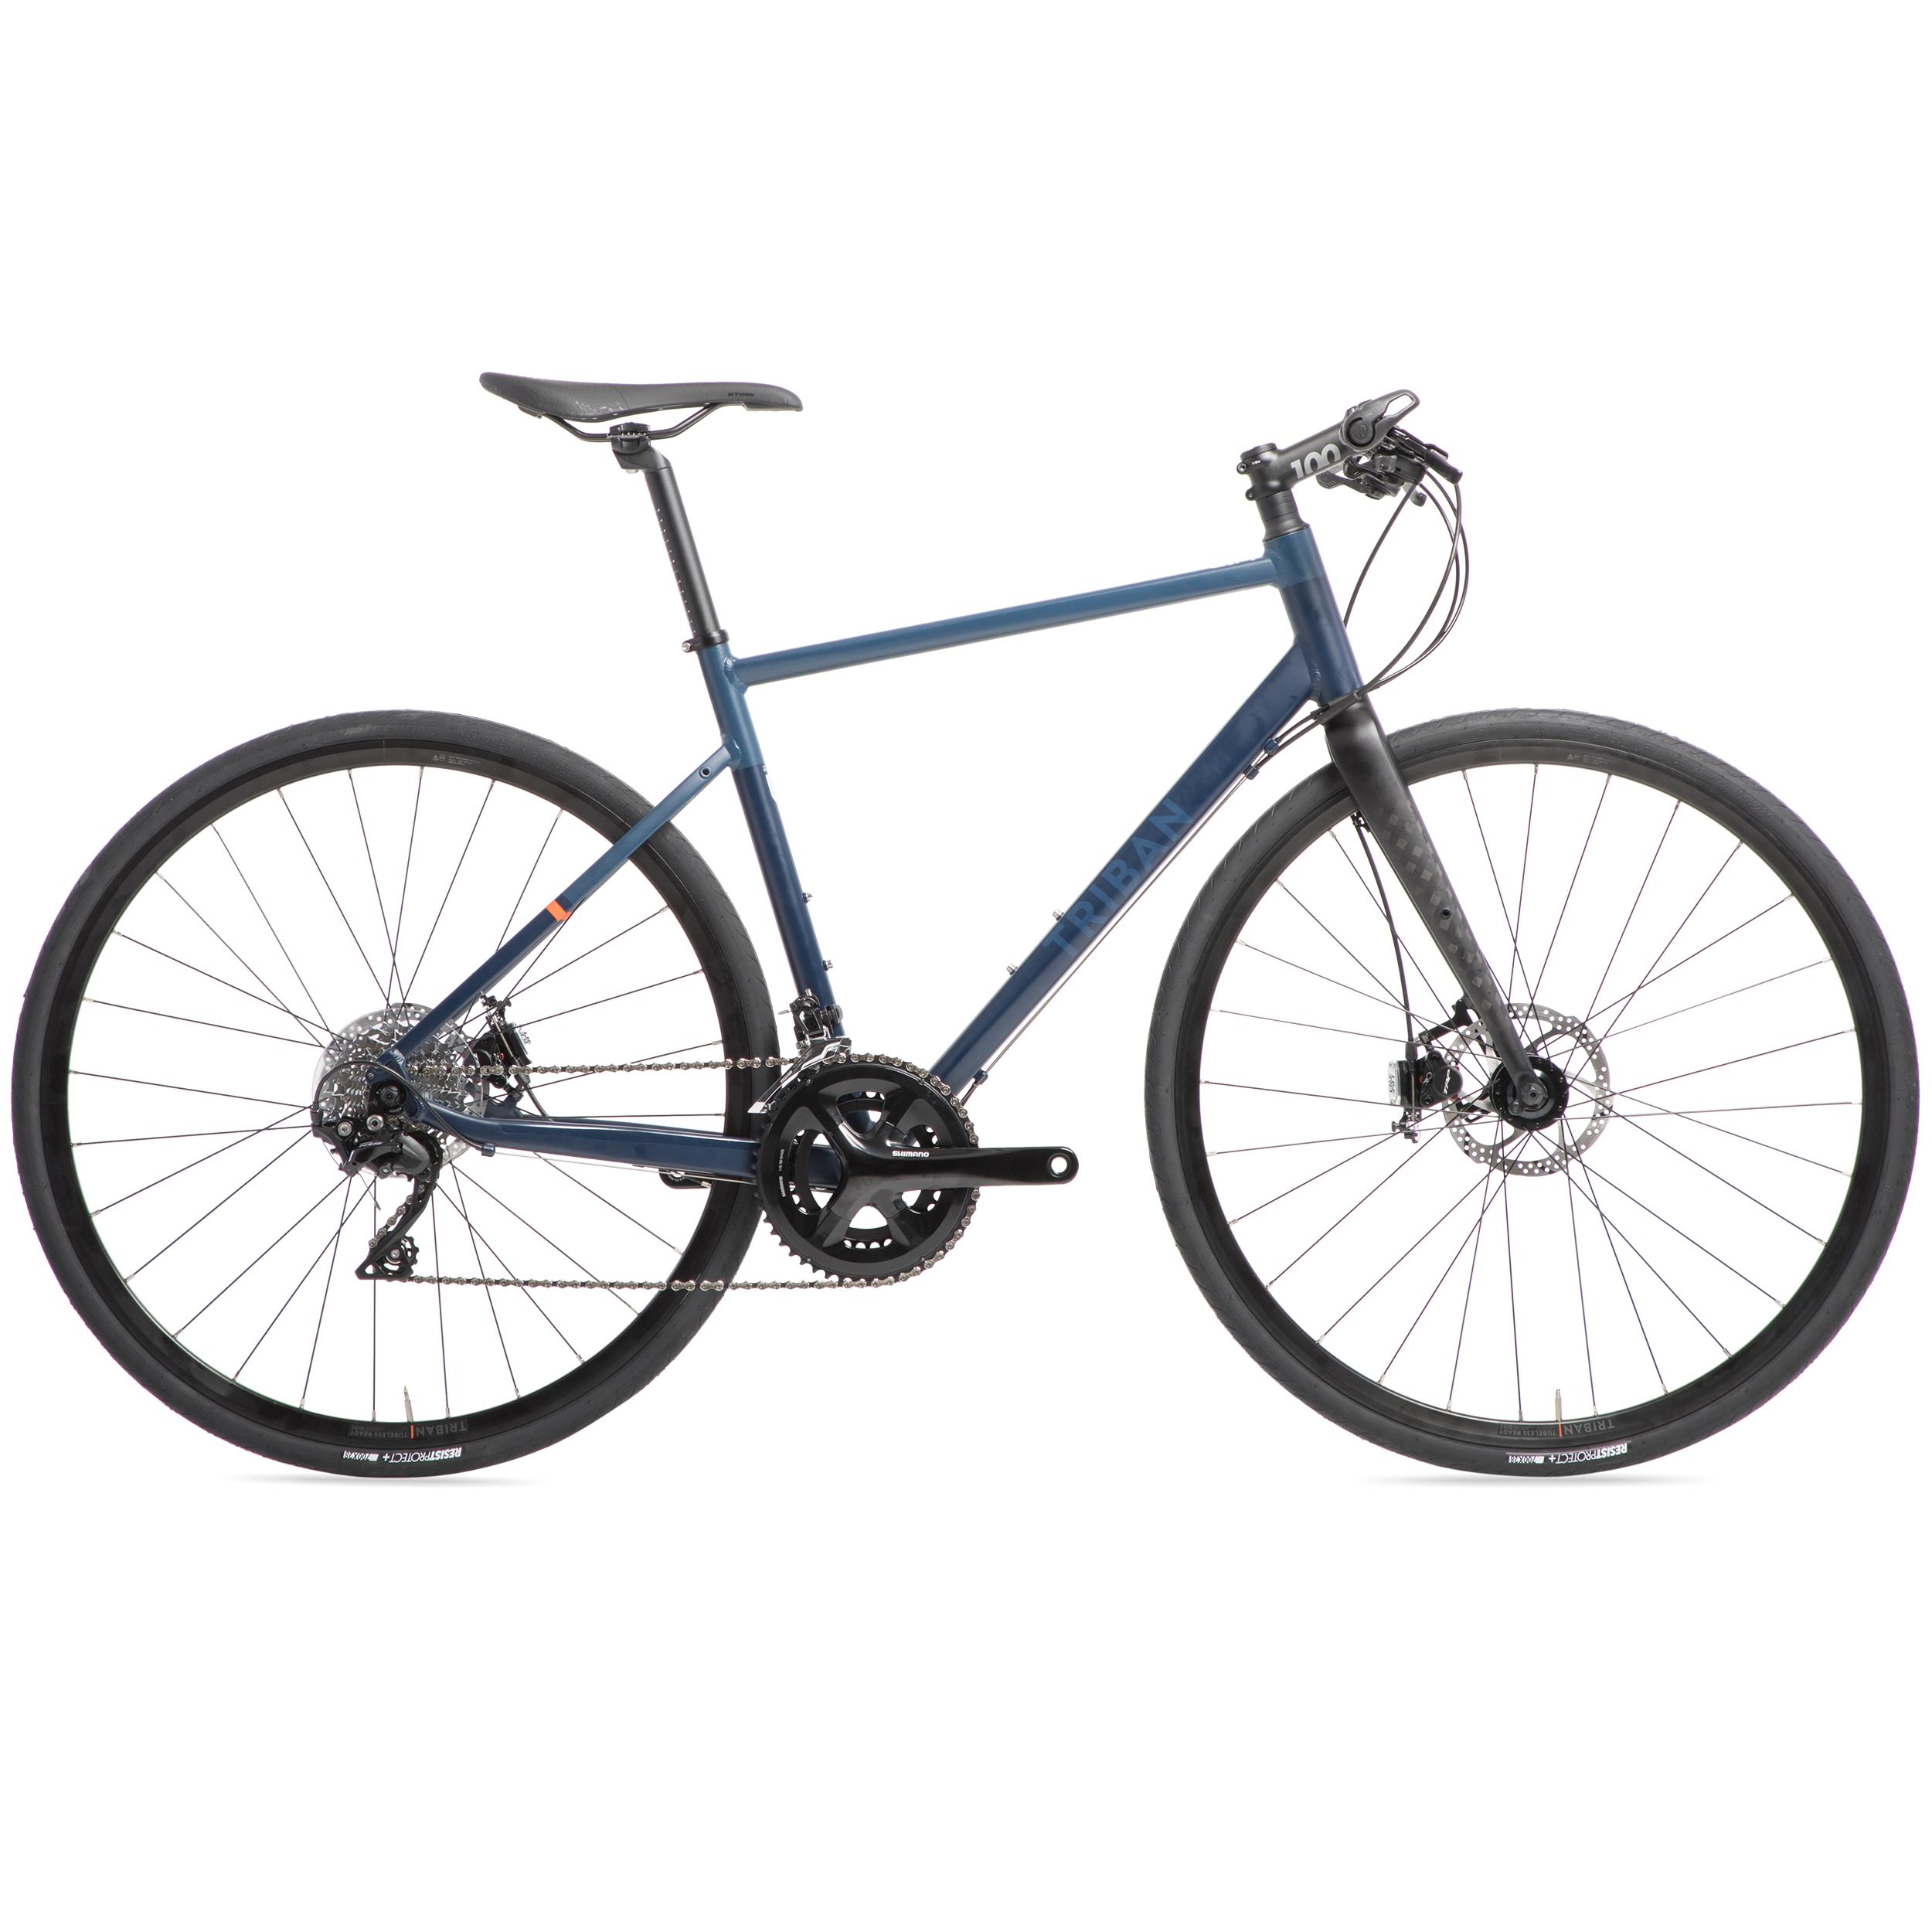 Bicicletă de șosea RC520 Flatbar frână pe disc Albastru decathlon.ro Biciclete